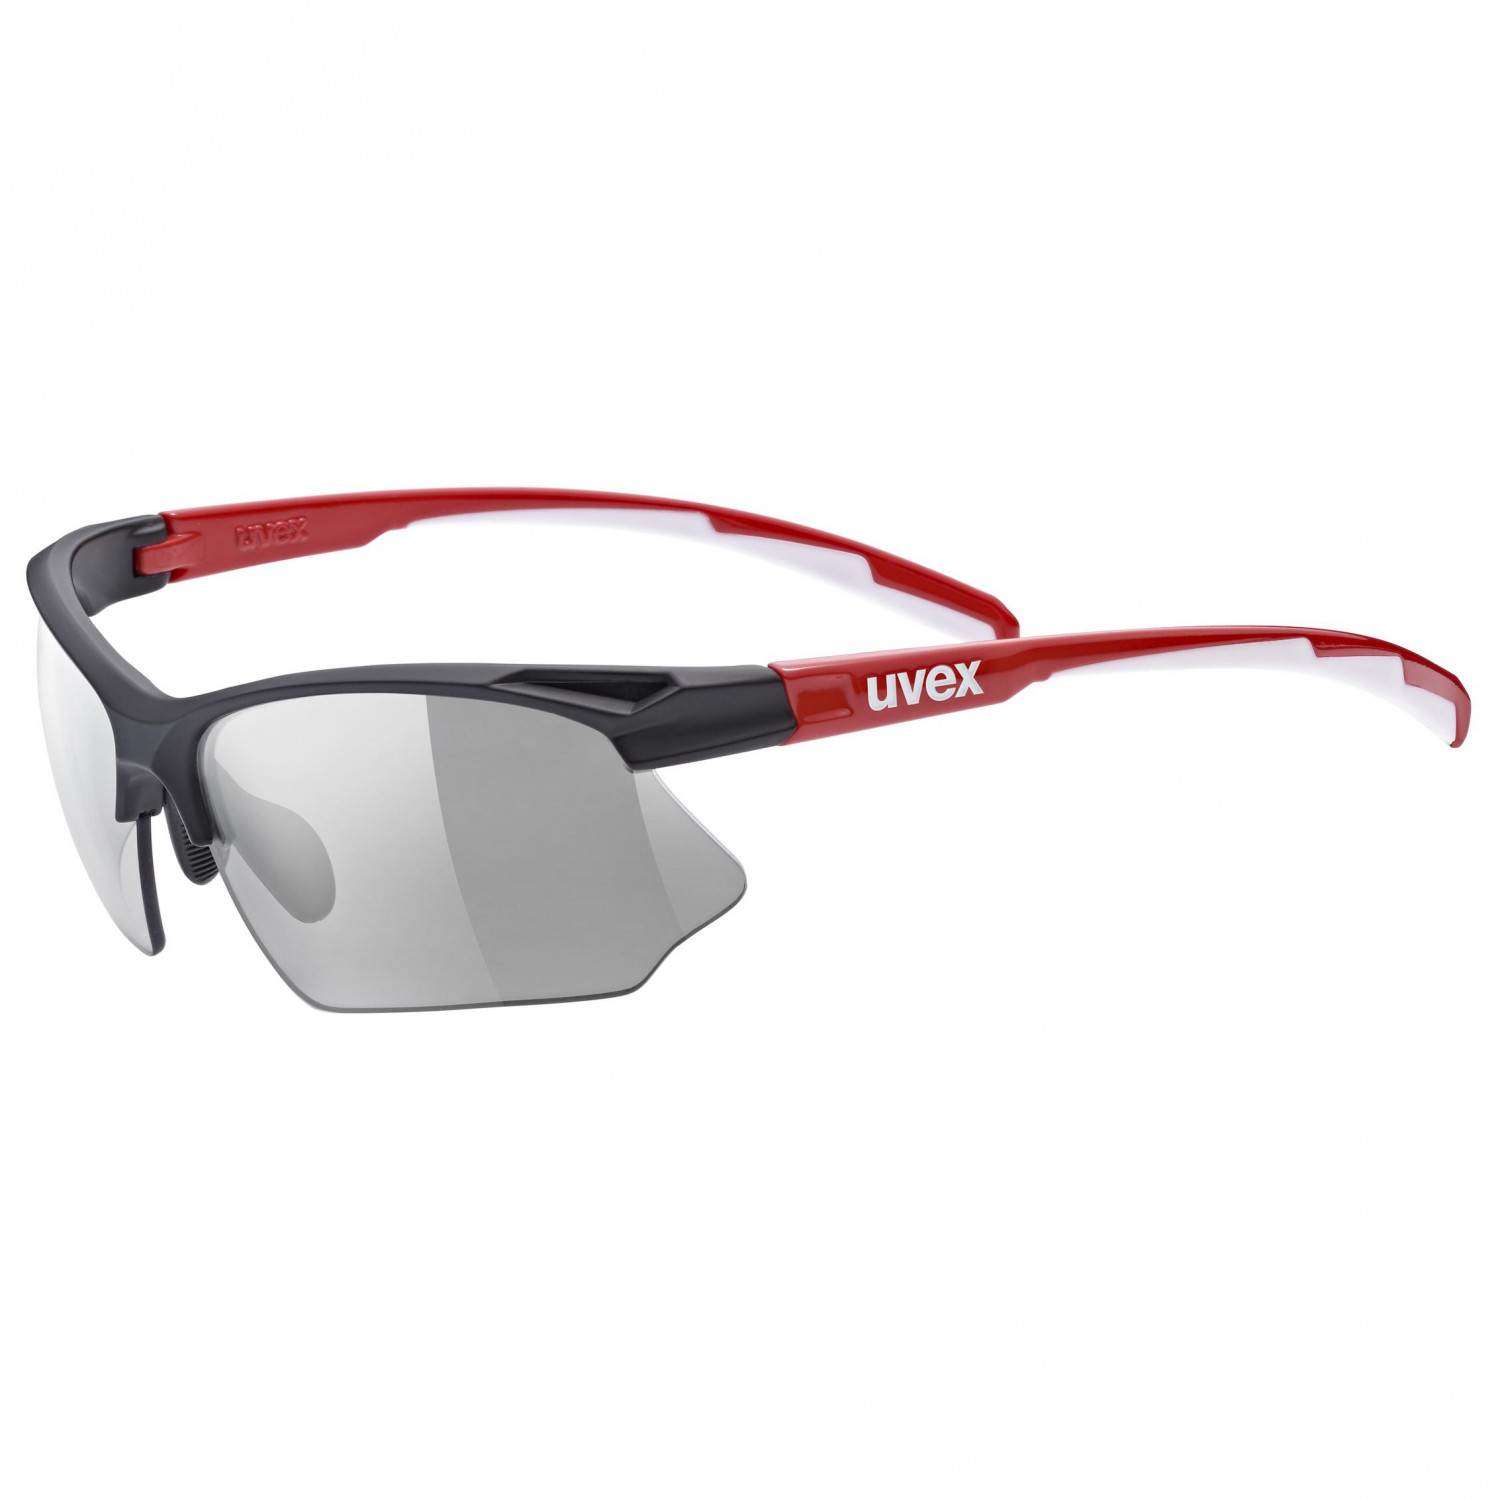 Велосипедные очки Uvex Sportstyle 802 Variomatic Cat: 1 3, цвет Black Red White